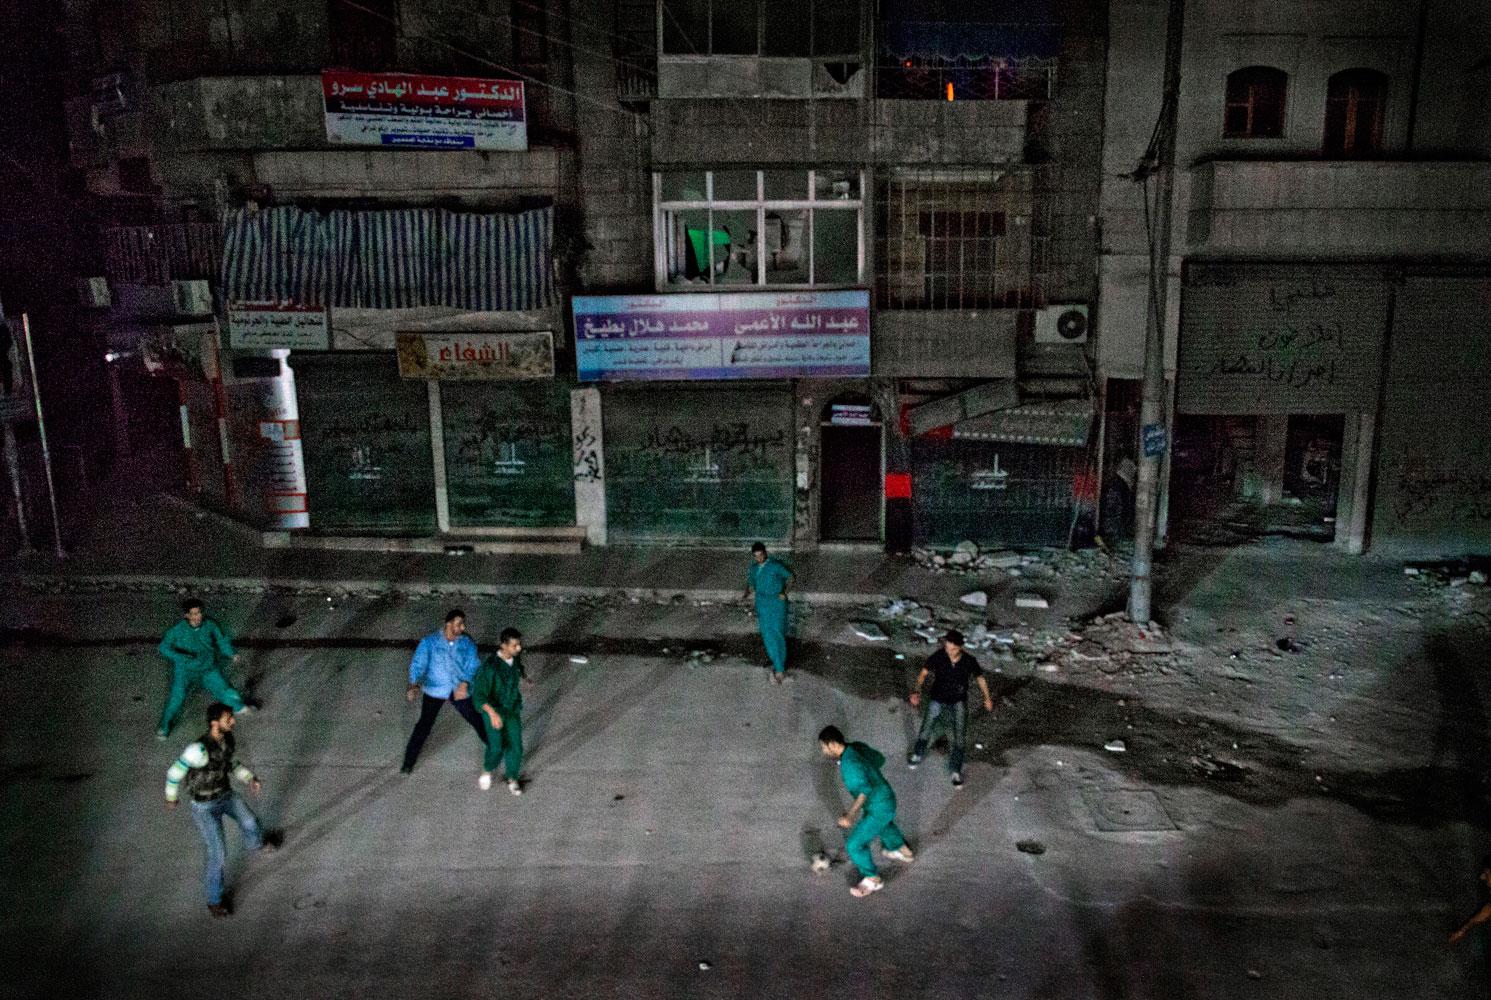 Sjukhuspersonalen spelar fotboll tillsammans med Fria syriska armén utanför sjukhuset mitt i natten.
- Vi måste göra något annat ibland. Glömma kriget för en kort stund, berättar doktor Osman Al-Hag, 30.